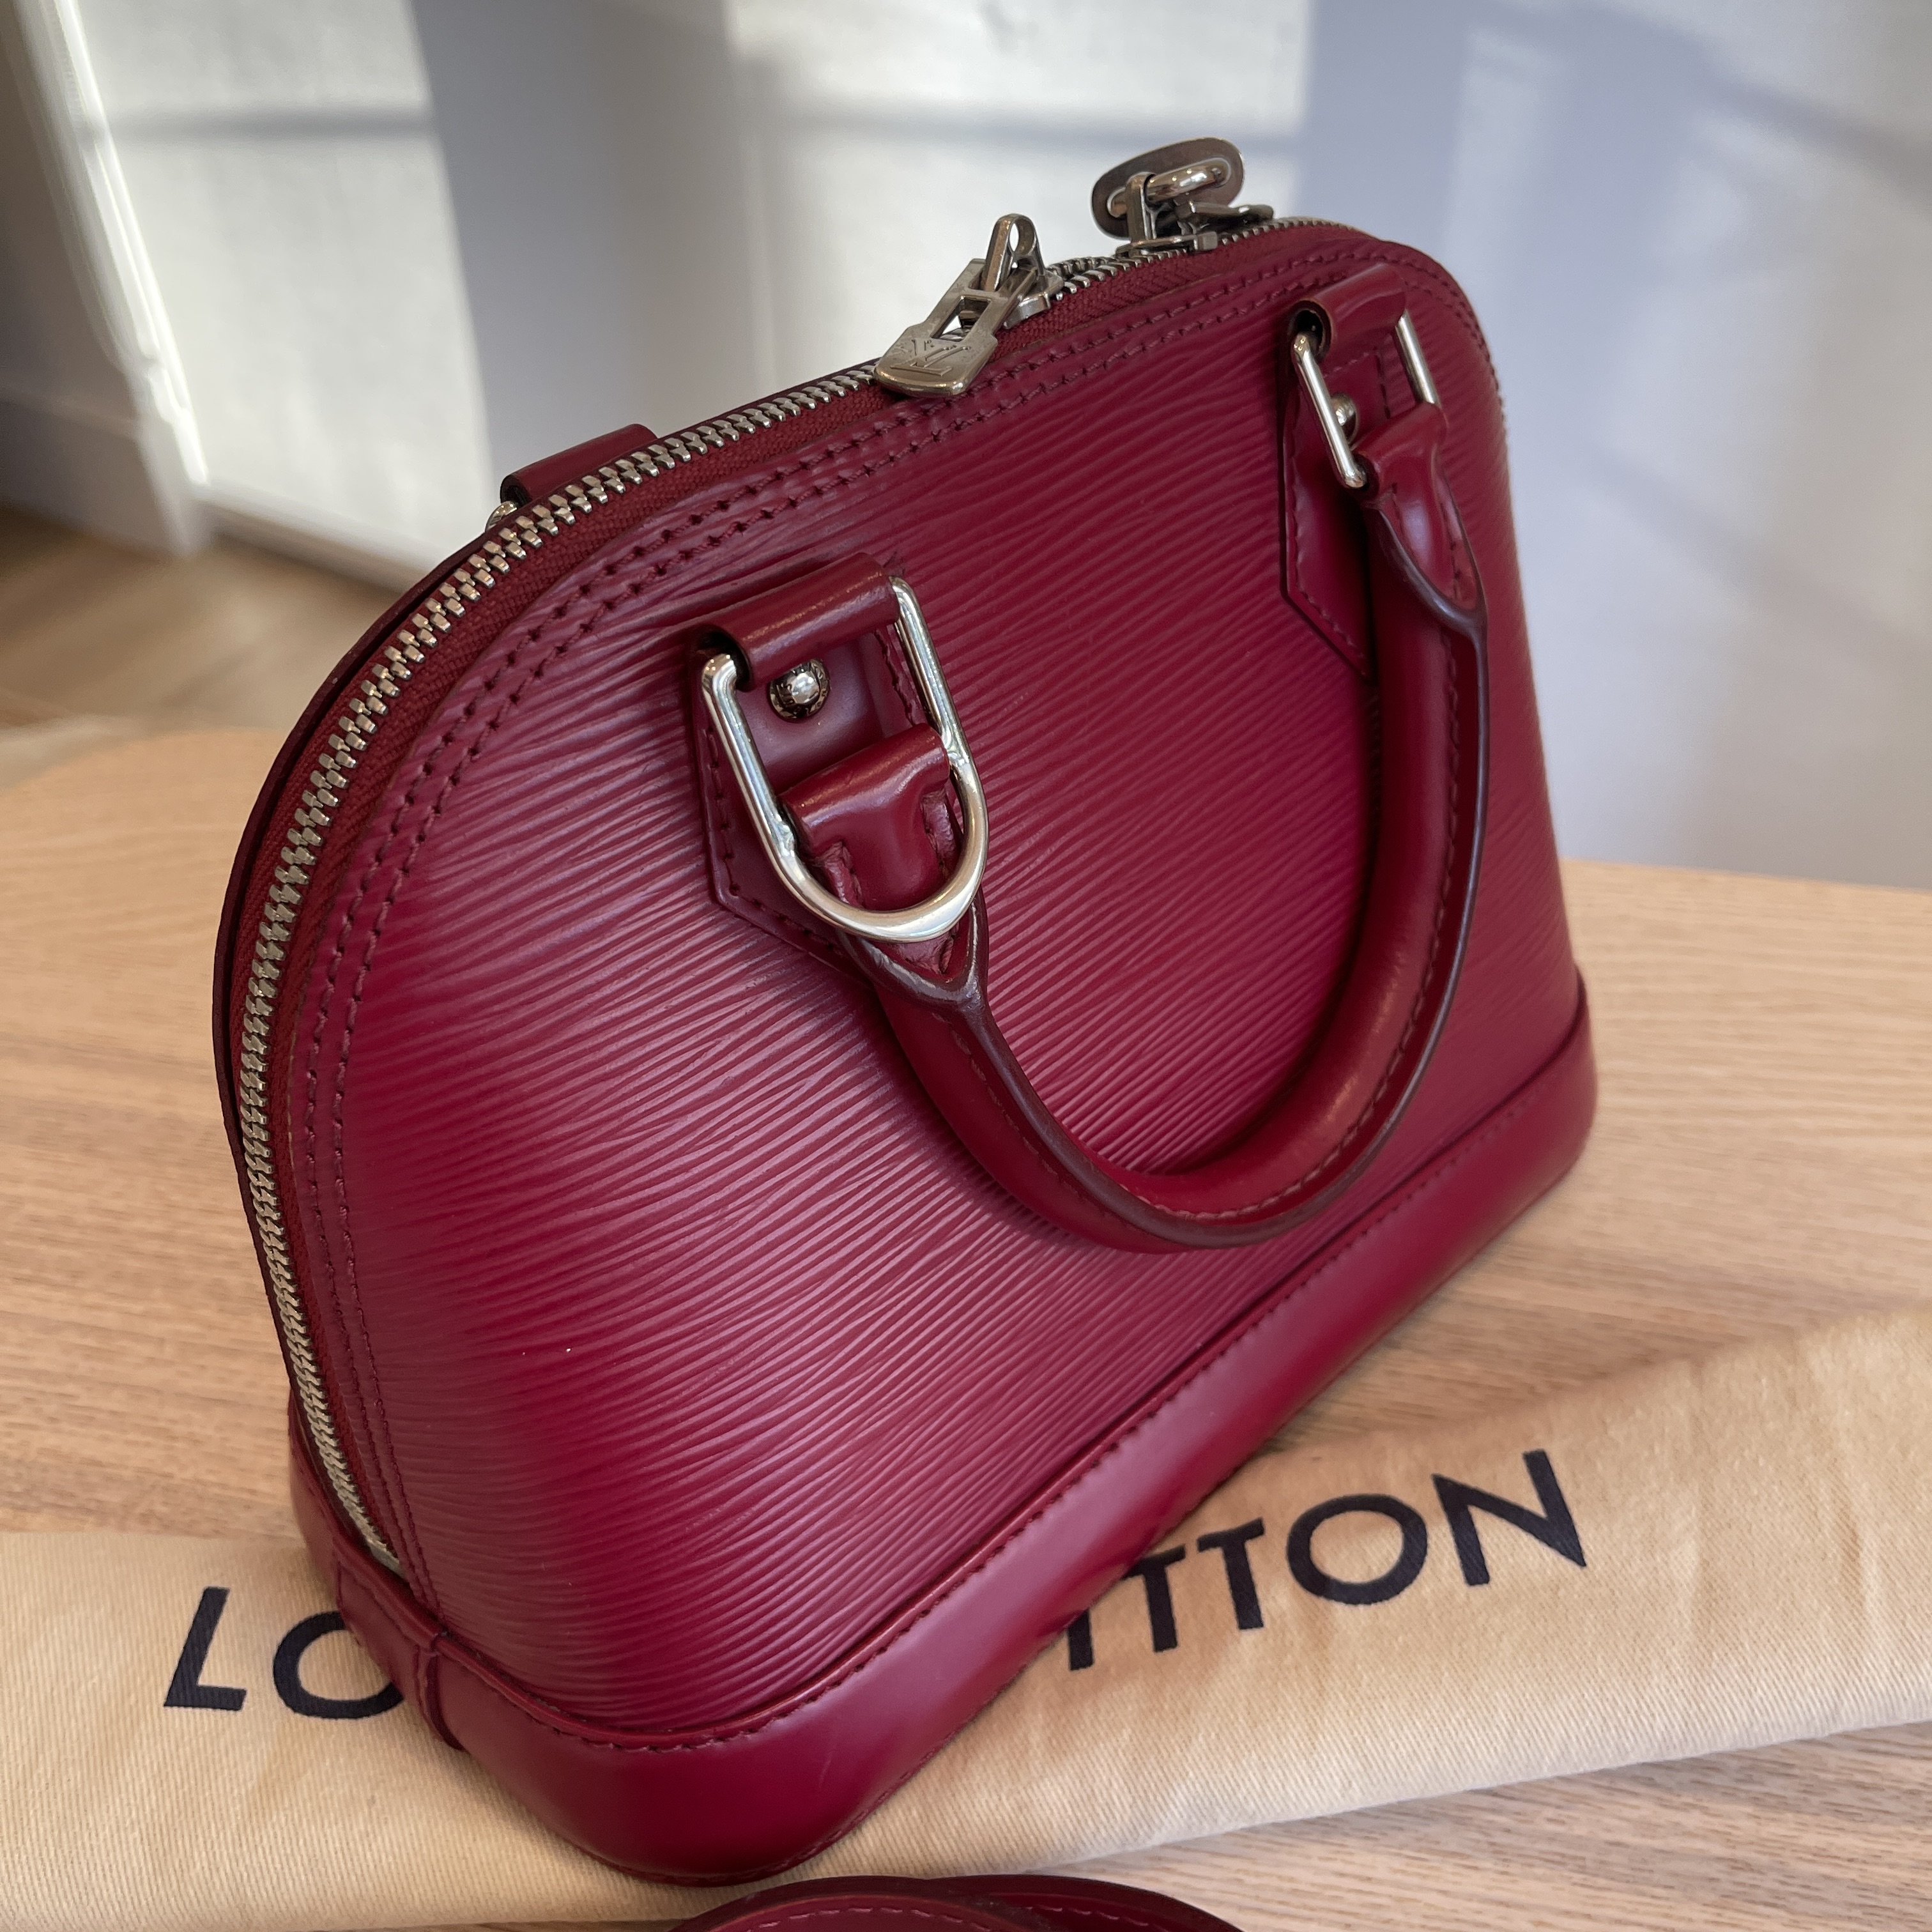 Louis Vuitton Alma BB in Fuchsia Epi Leather - SOLD